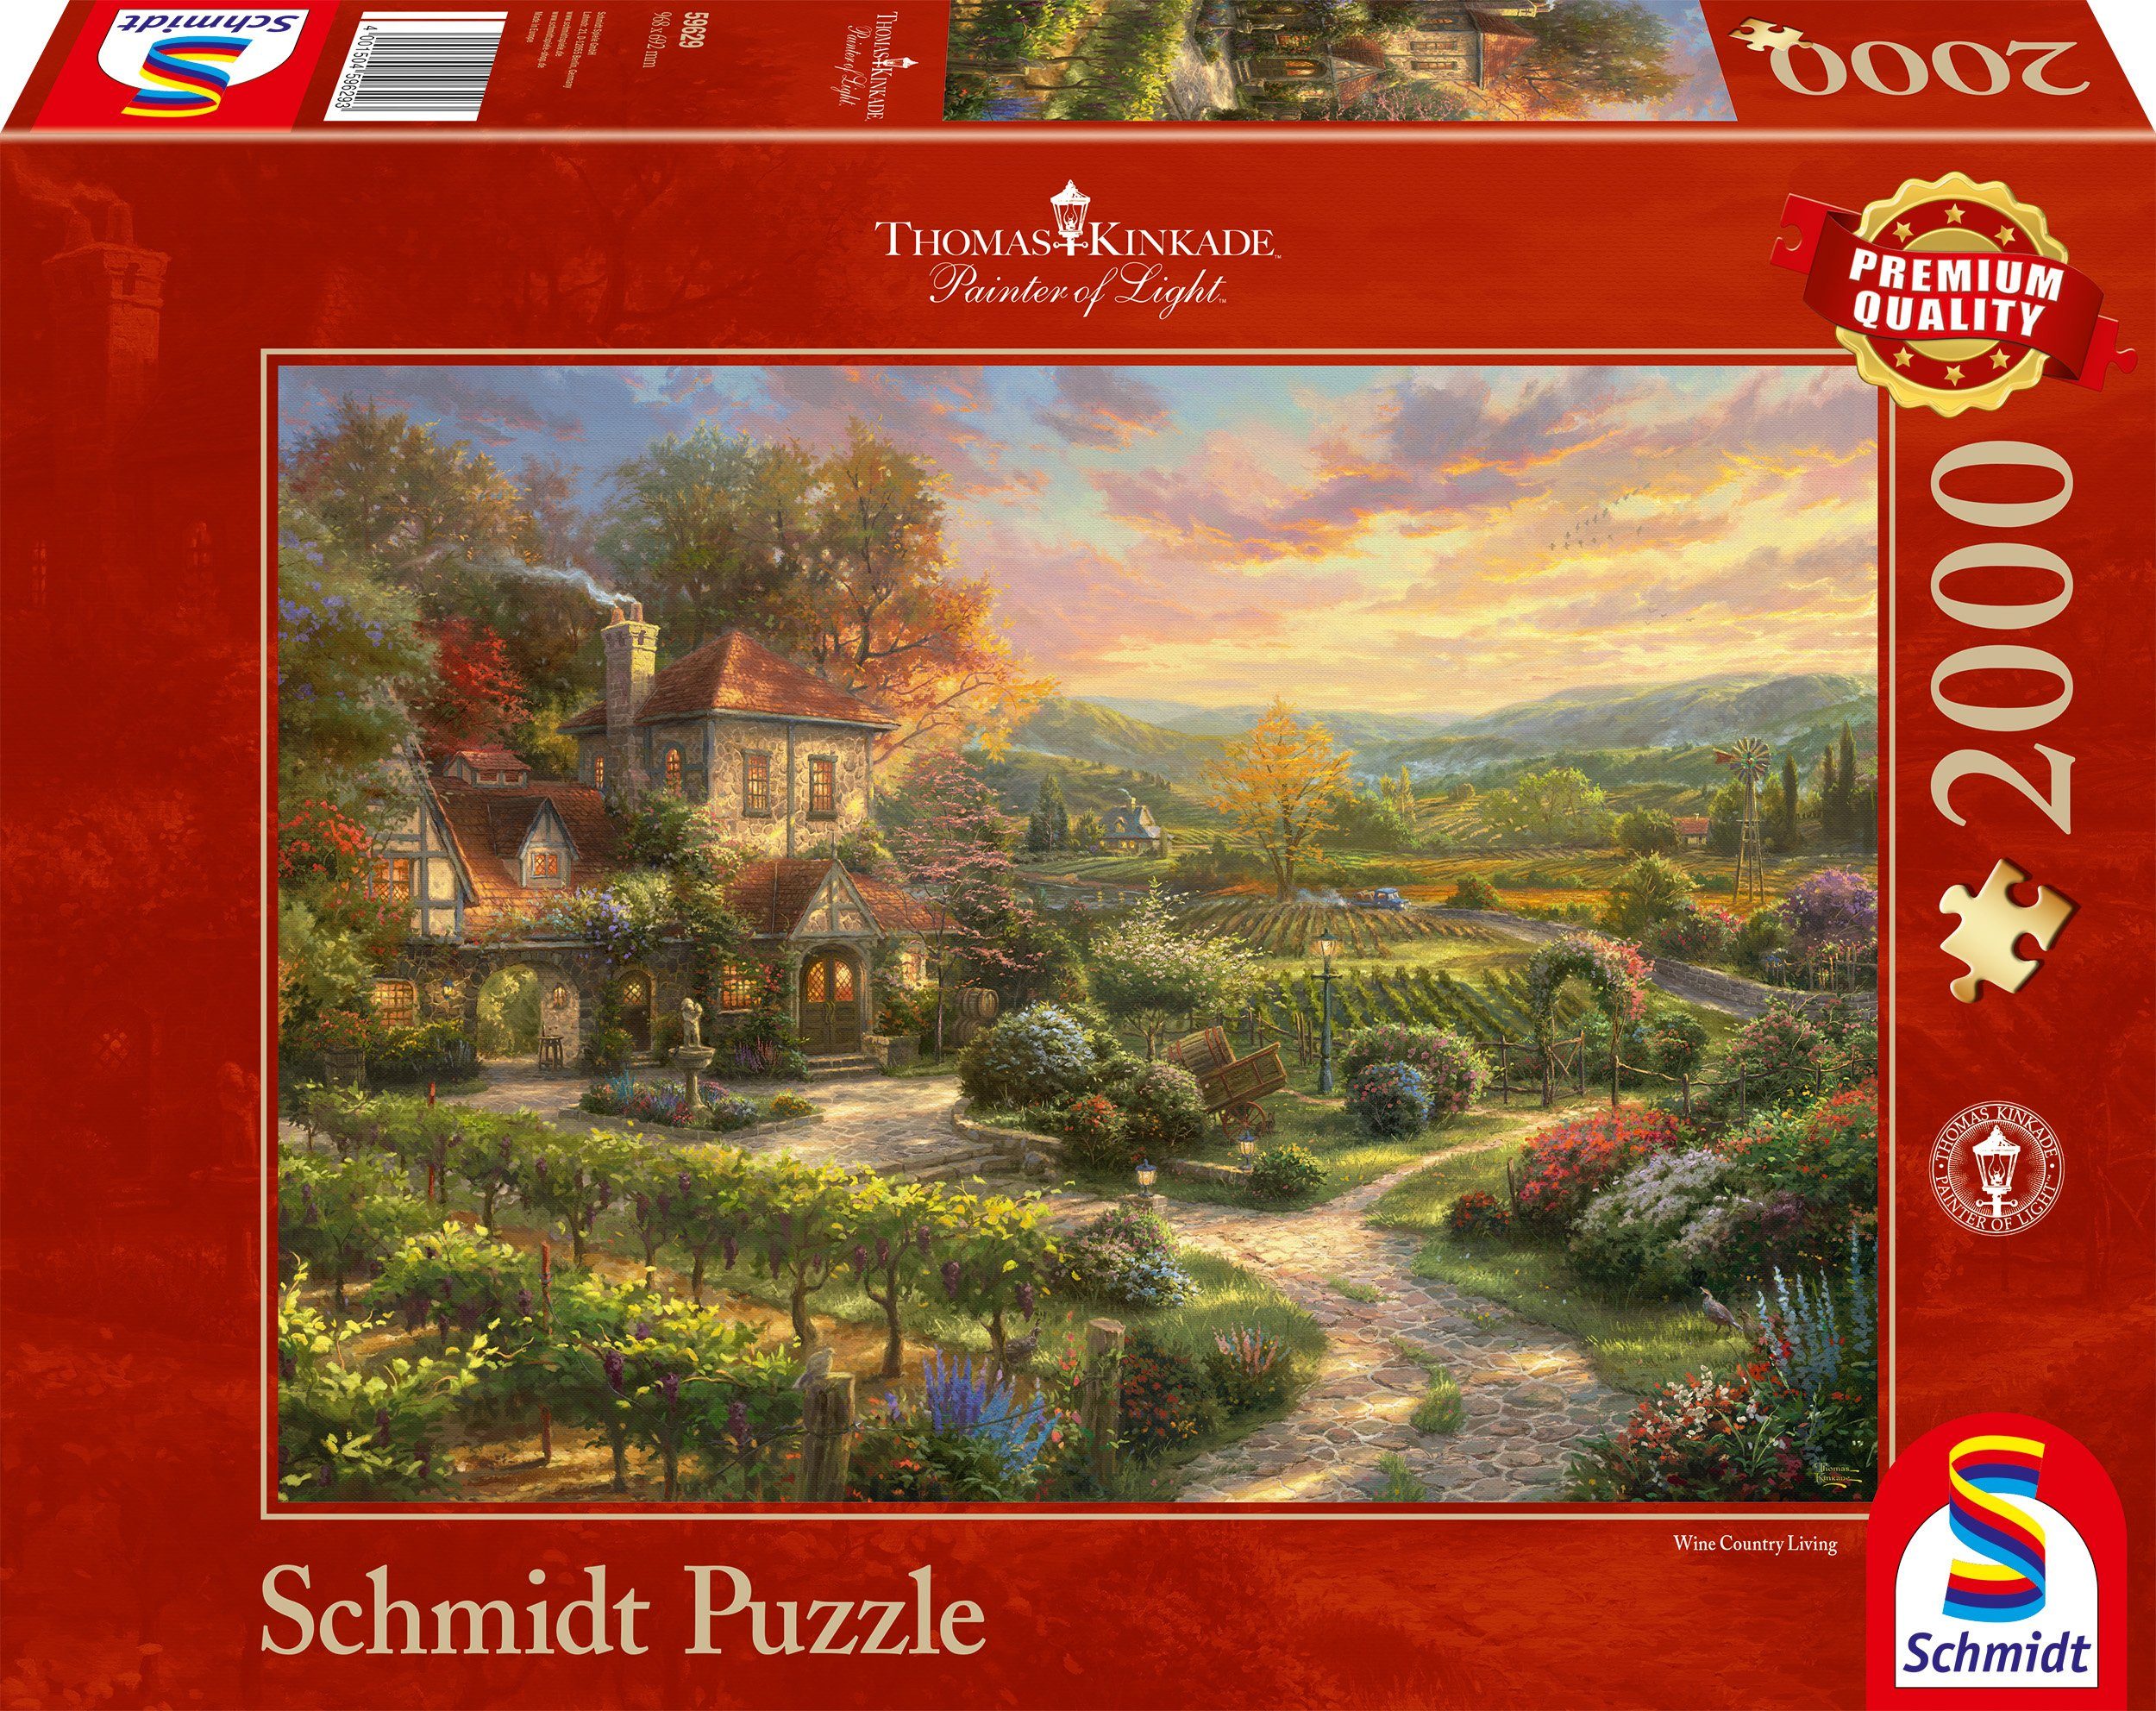 Schmidt Spiele Puzzle In den Weinbergen, 2000 Puzzleteile, Thomas Kinkade